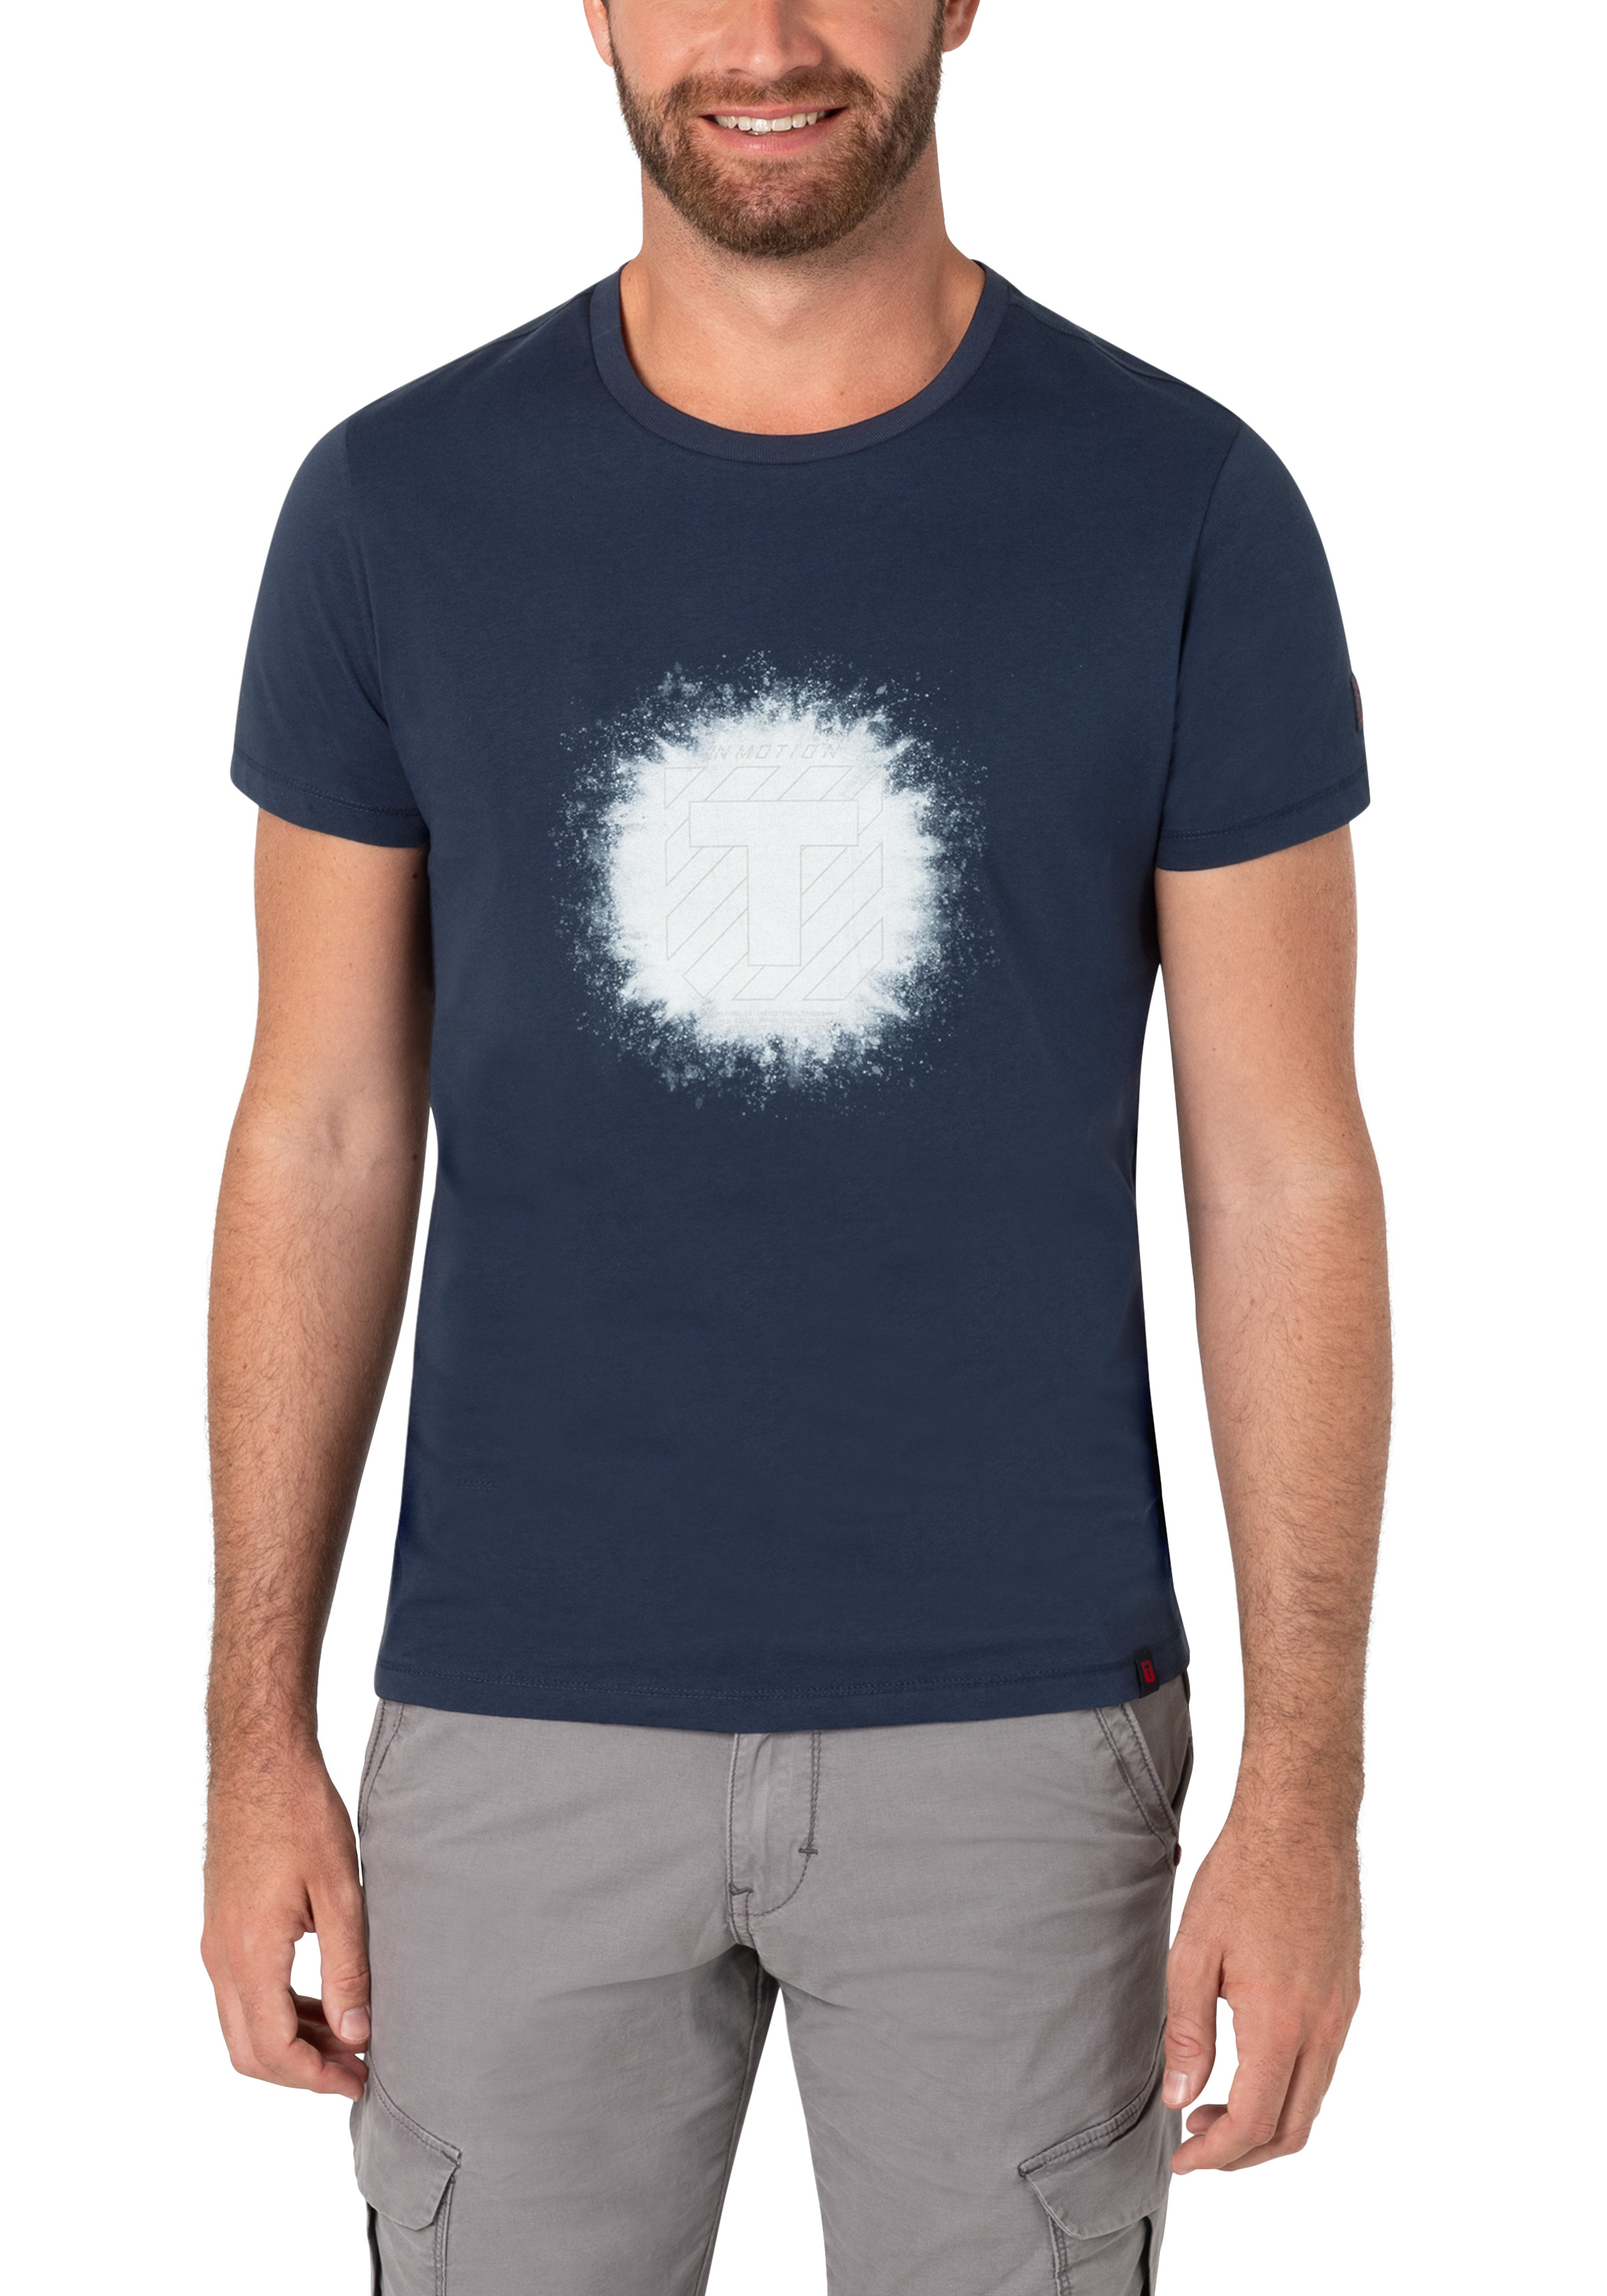  Splash Print T-Shirt